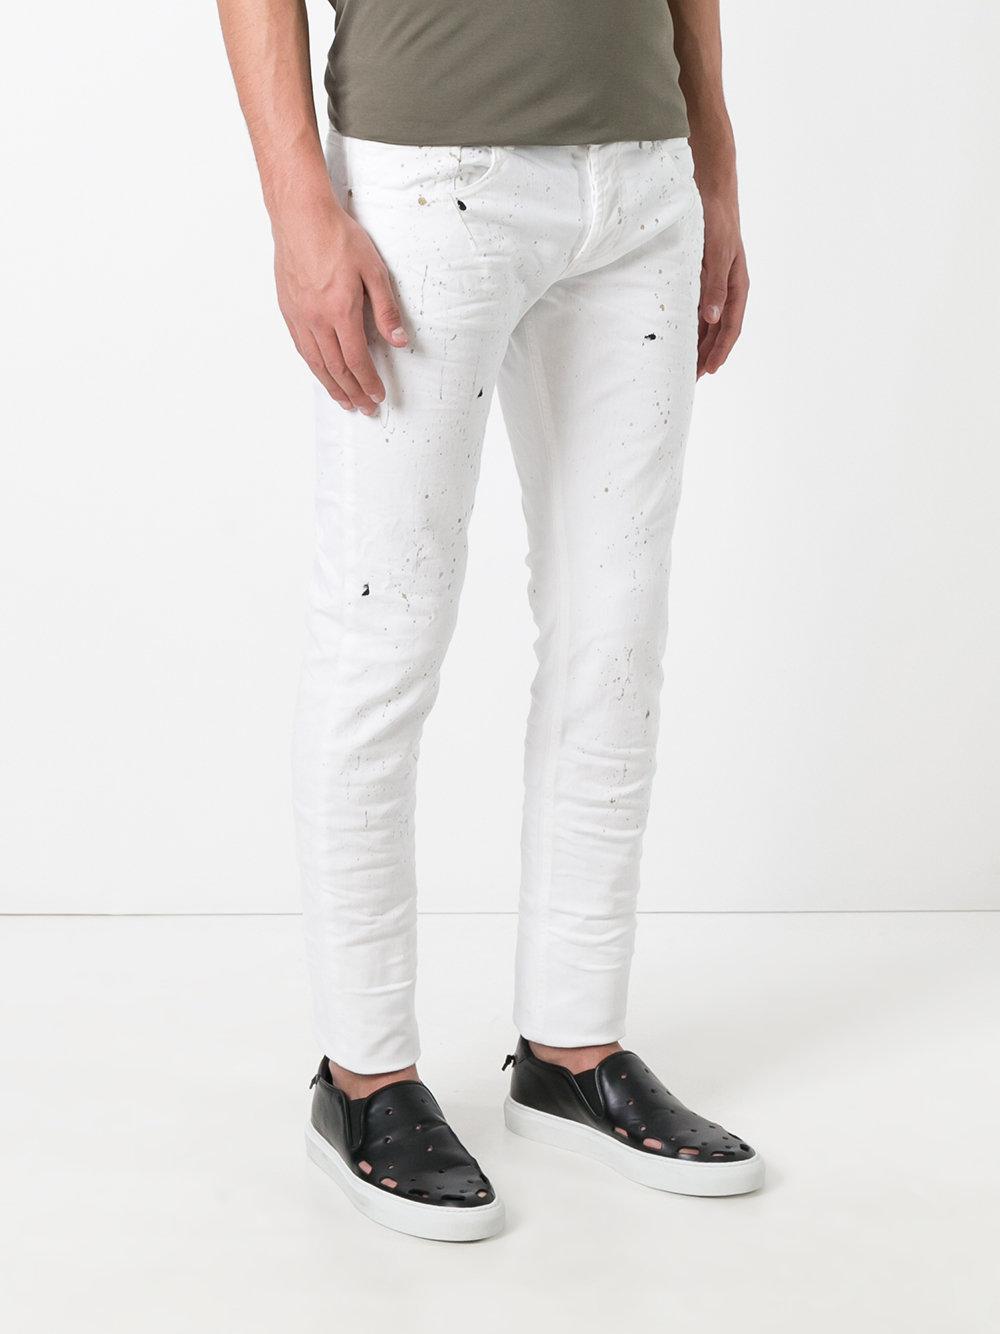 Les Hommes Denim Paint Splatter Slim-fit Jeans in White for Men - Lyst